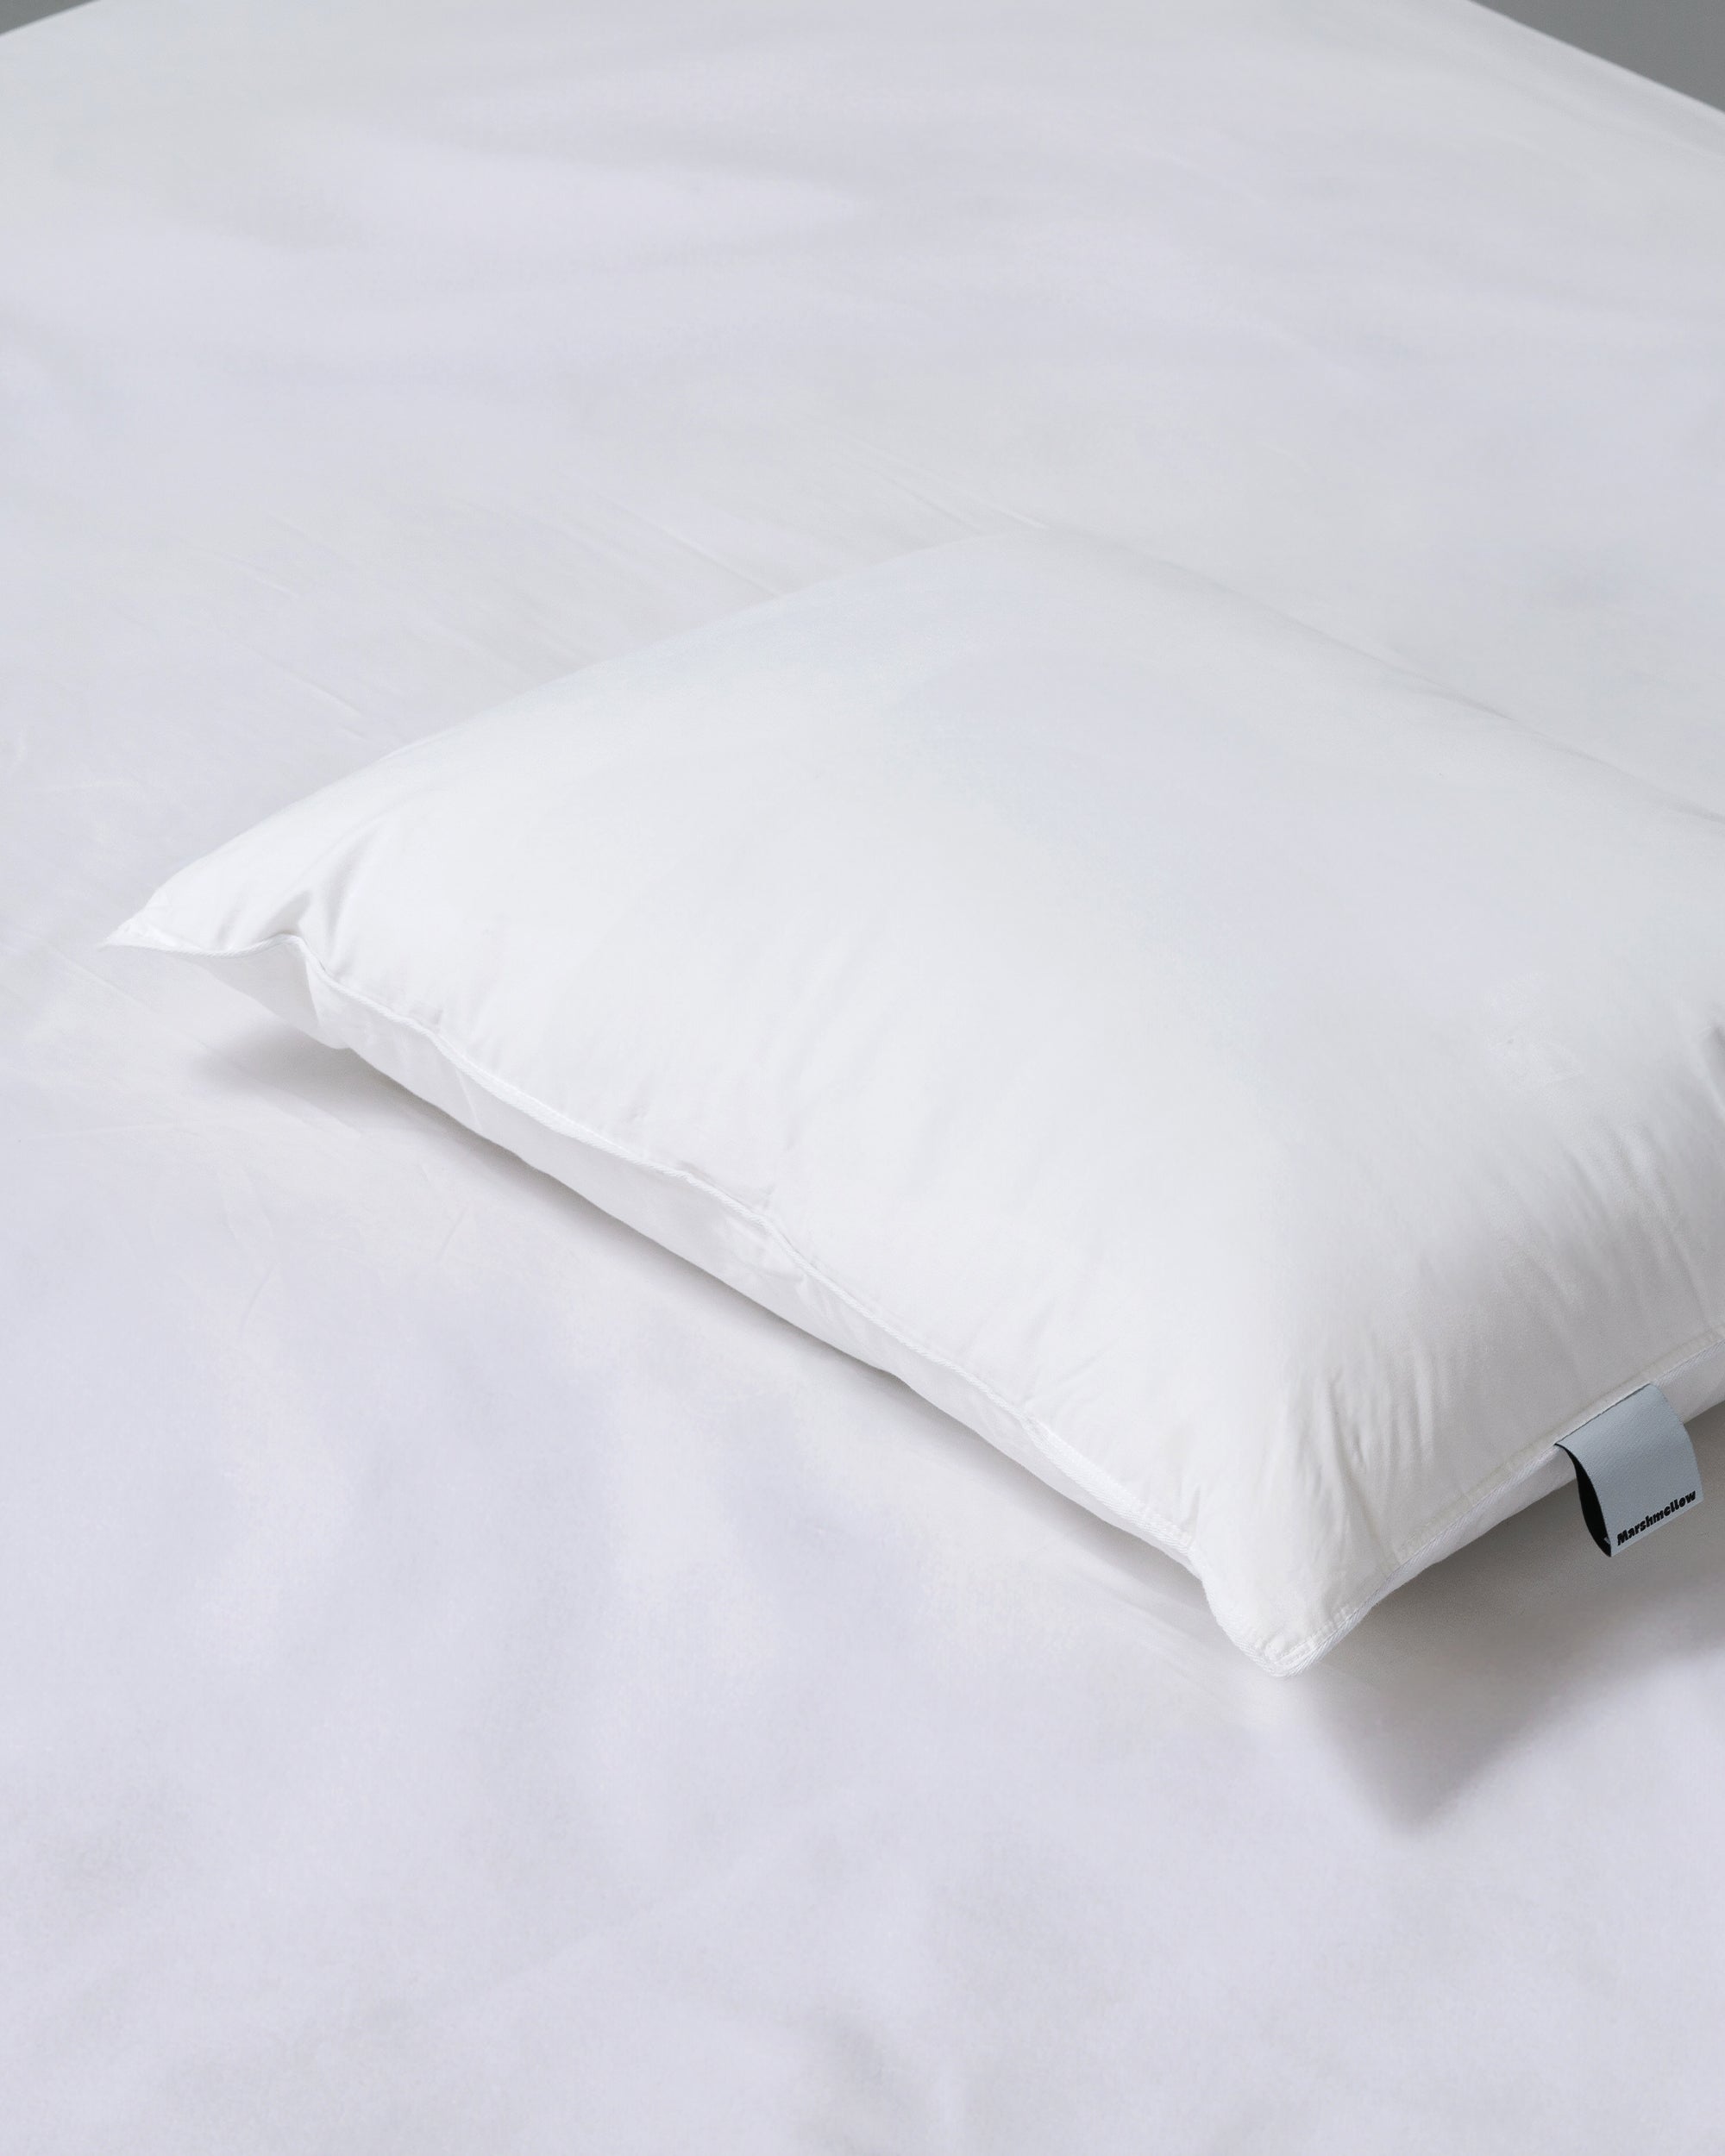 Natural Pillow